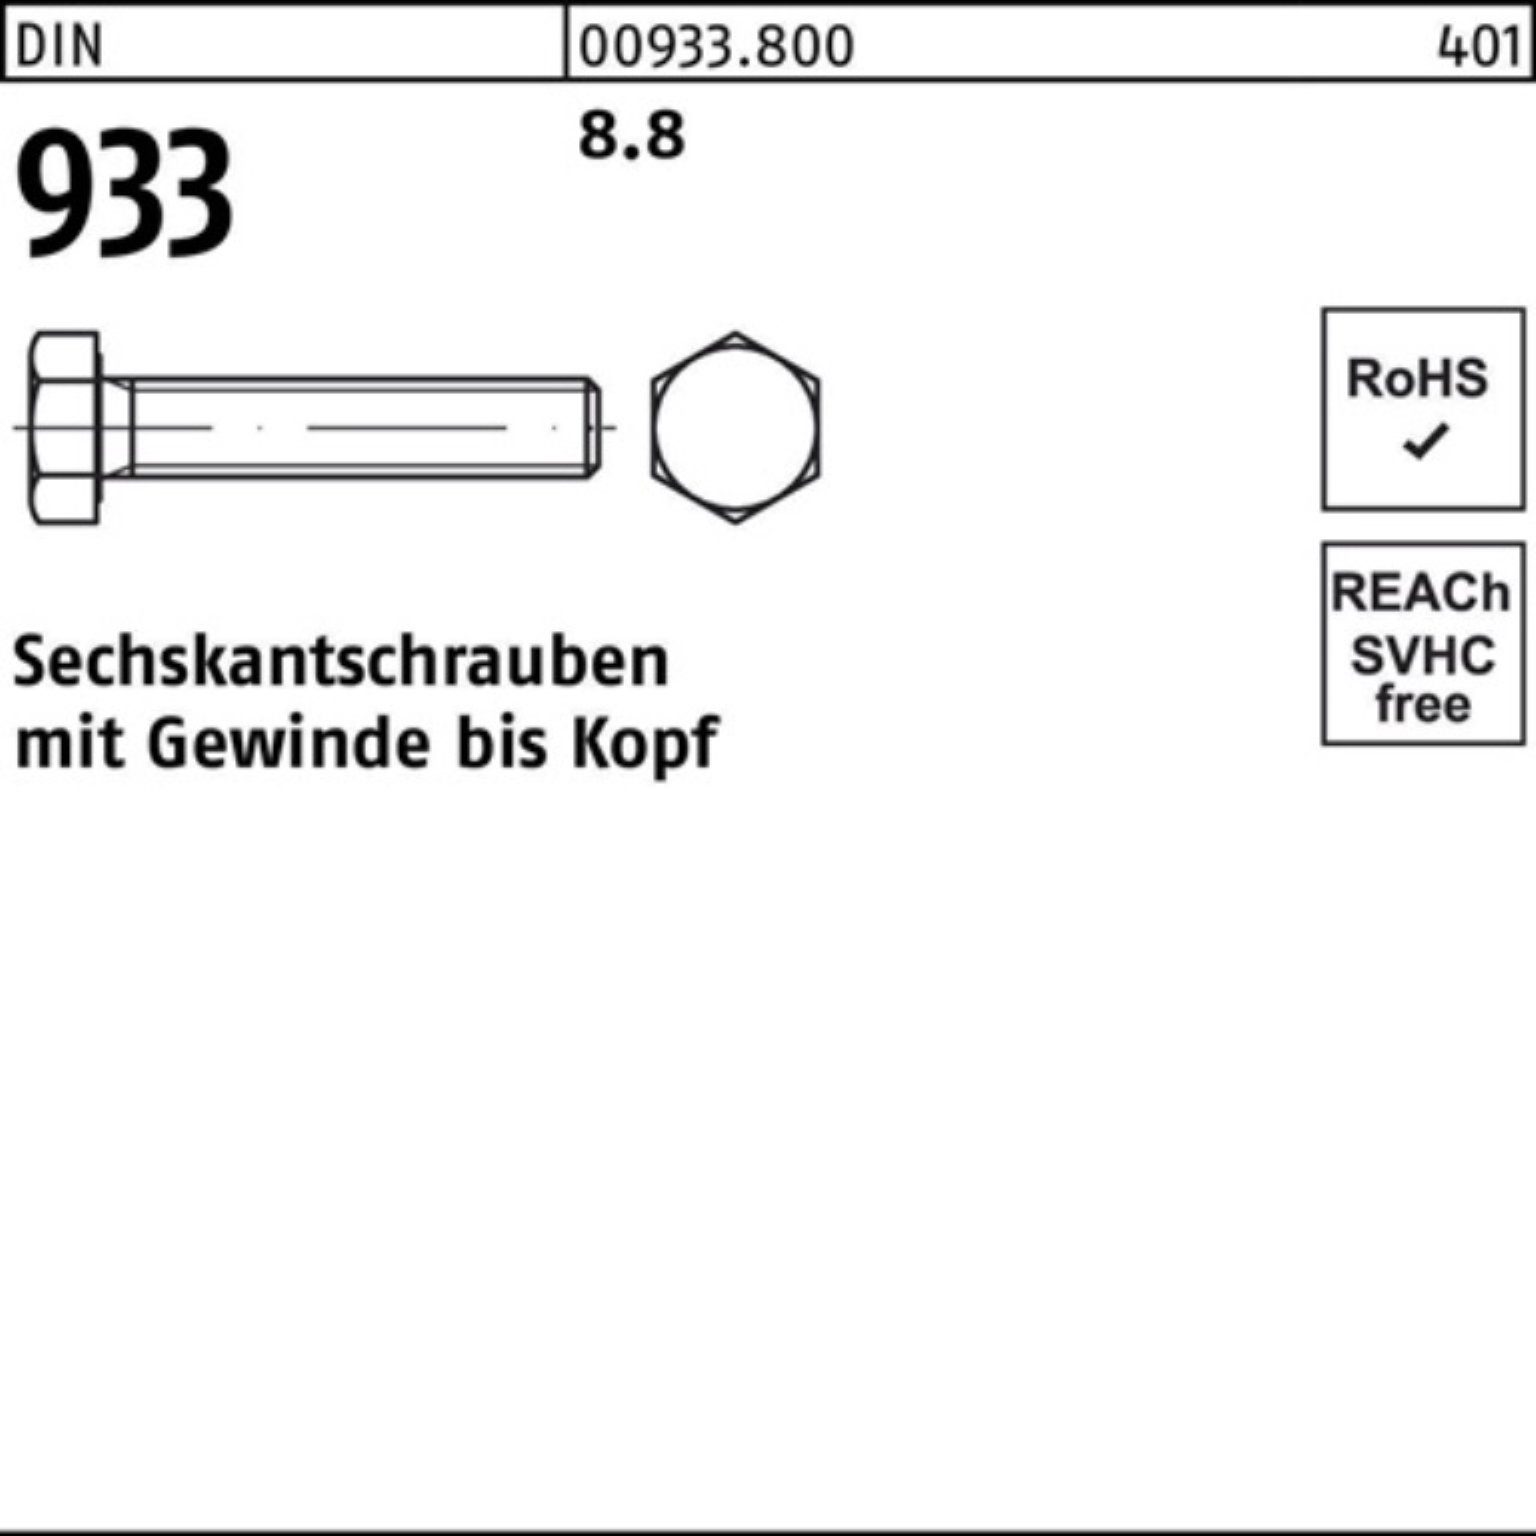 Sechskantschraube Sechskantschraube 933 M30x DIN 230 100er Reyher 8.8 Stück Pack 933 DIN VG 1